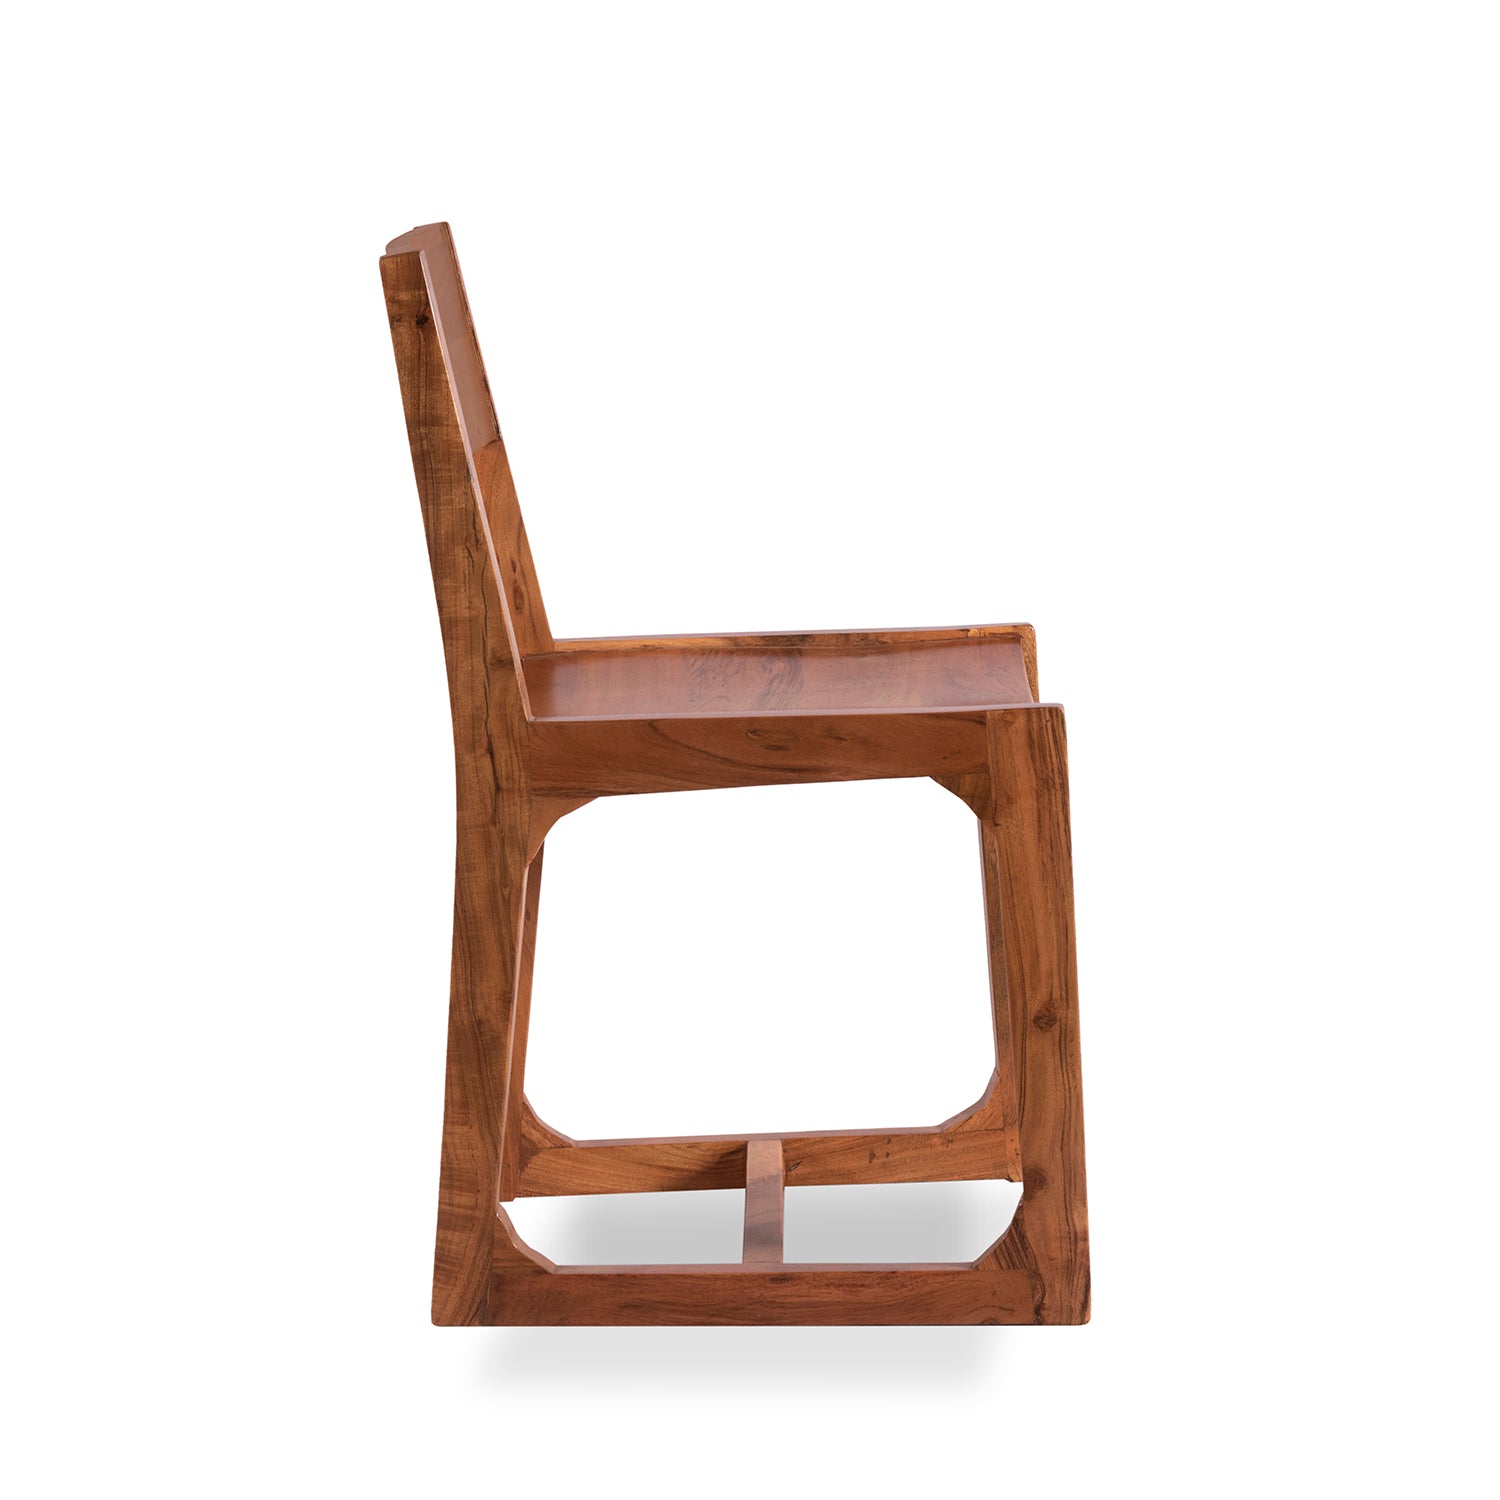 acacia wood chair